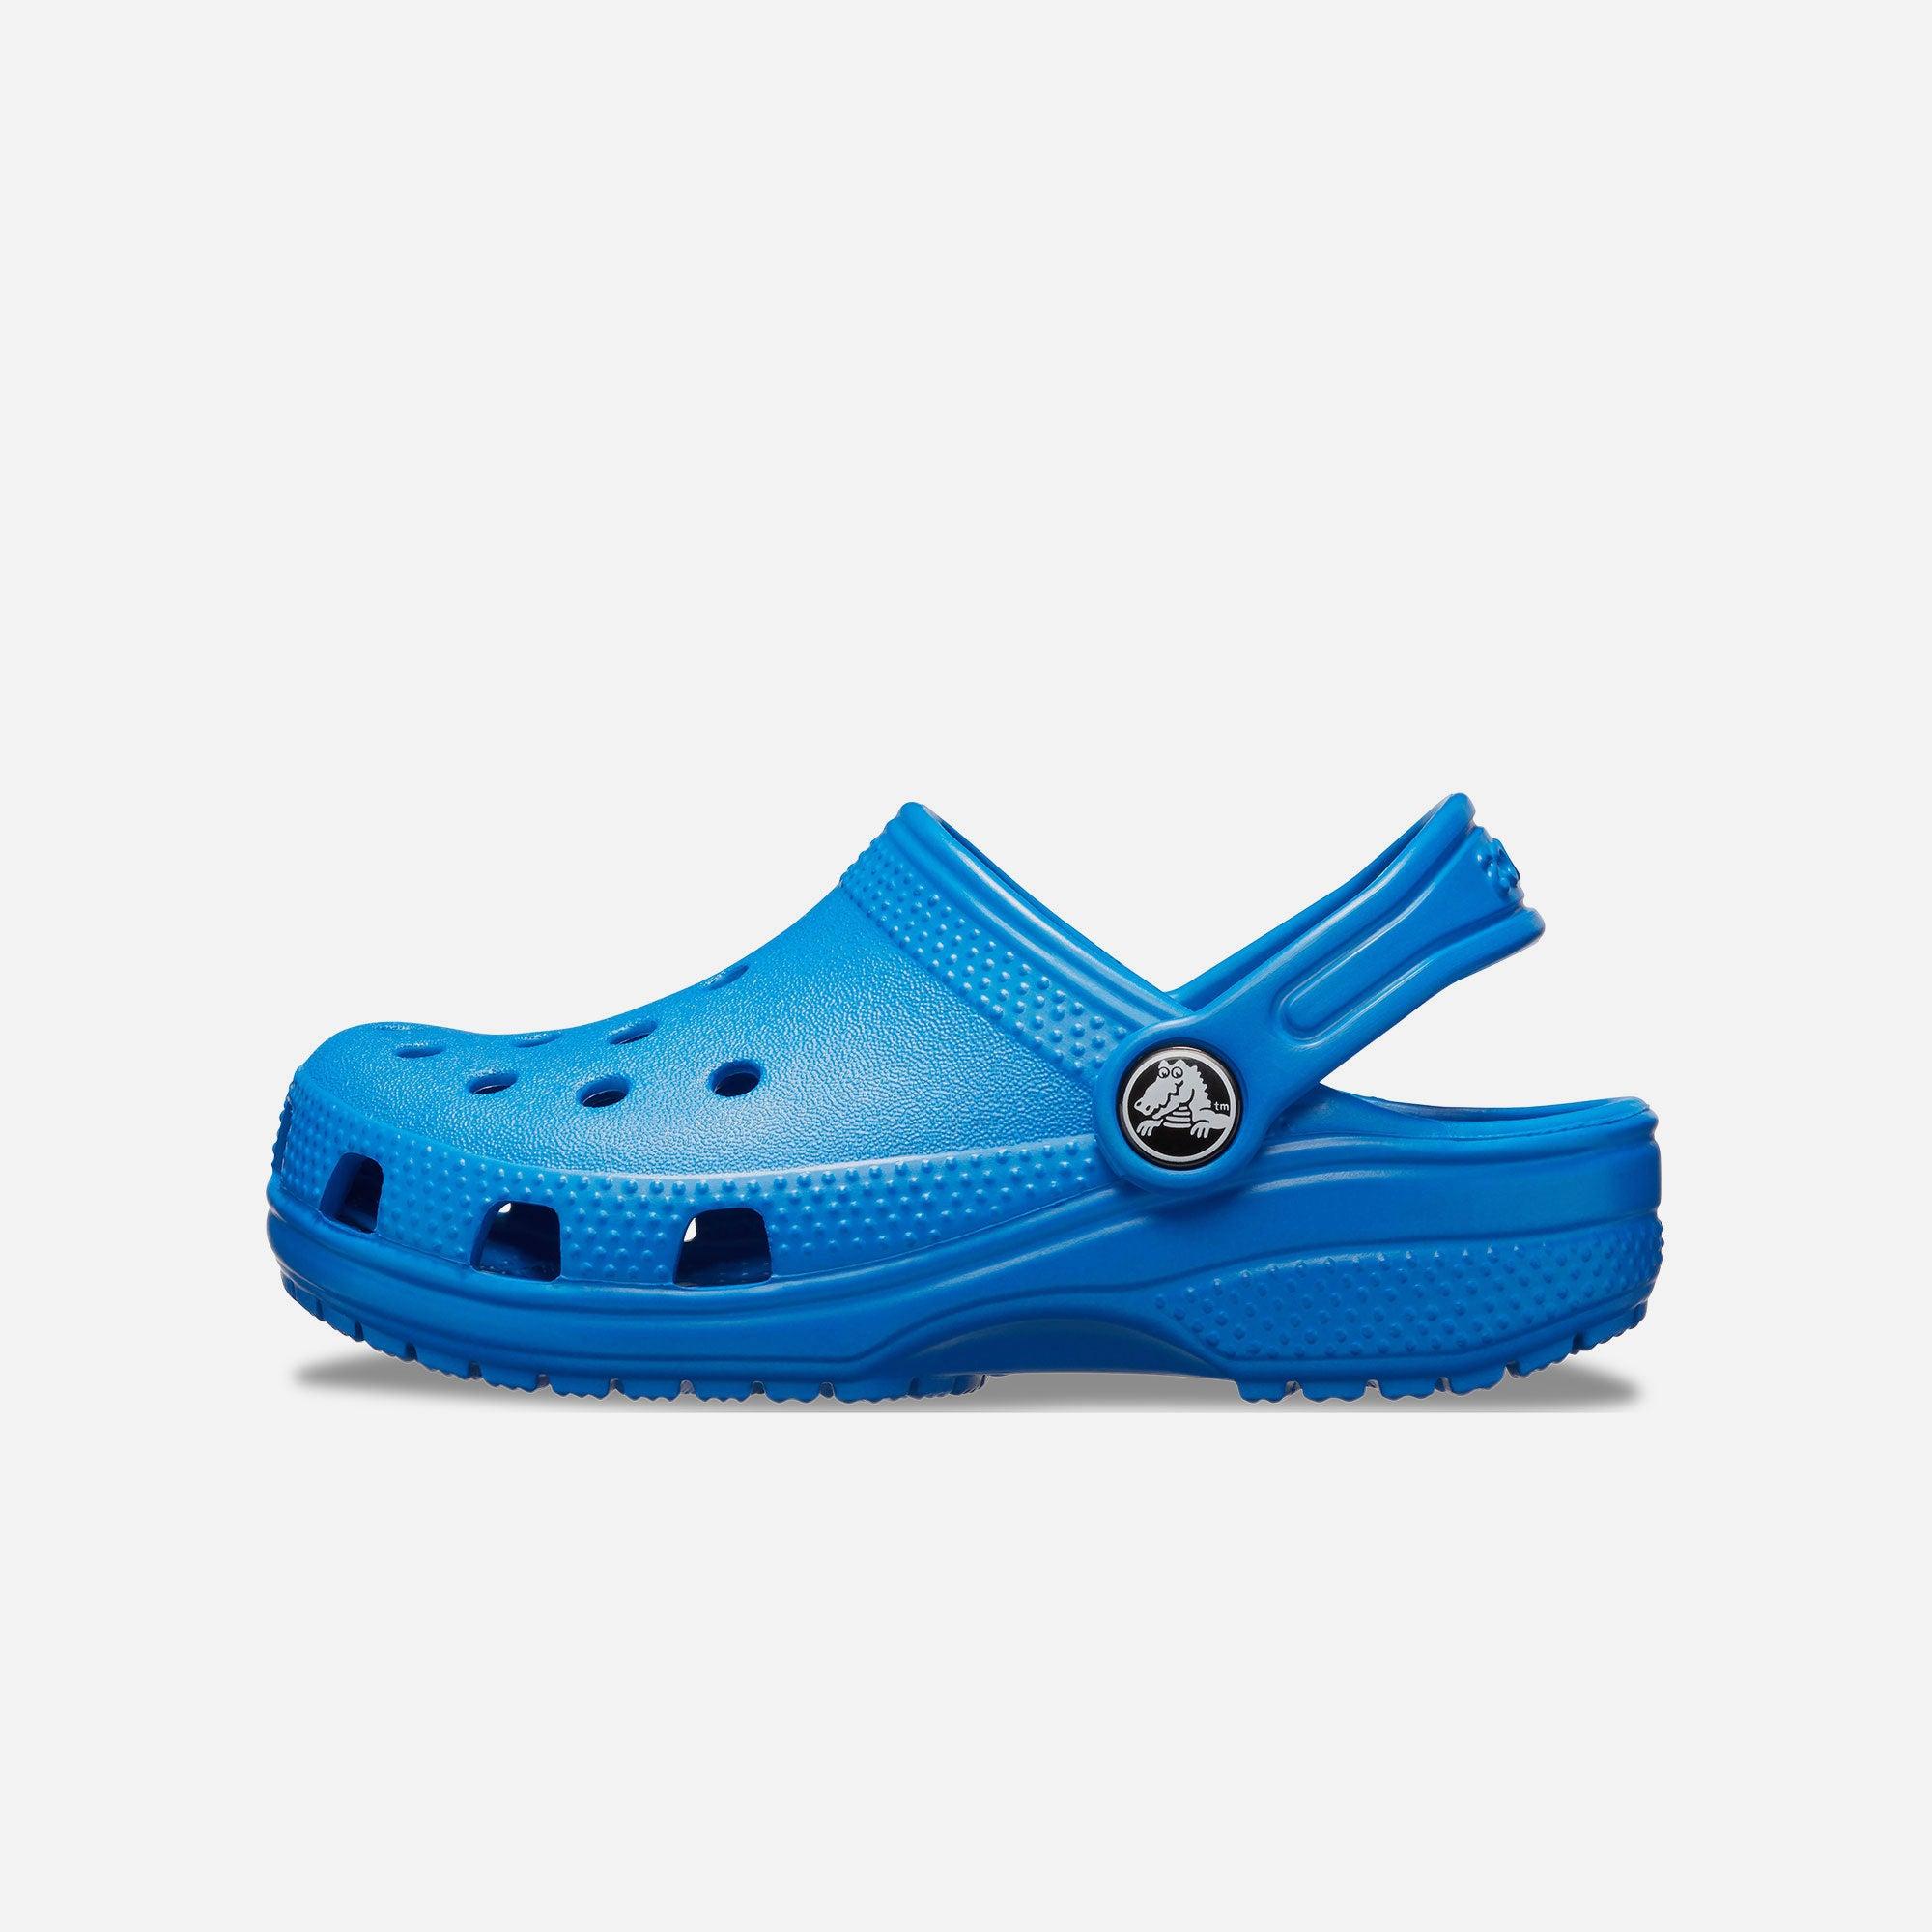 Giày nhựa thời trang trẻ em Crocs Classic - 206991-4JL